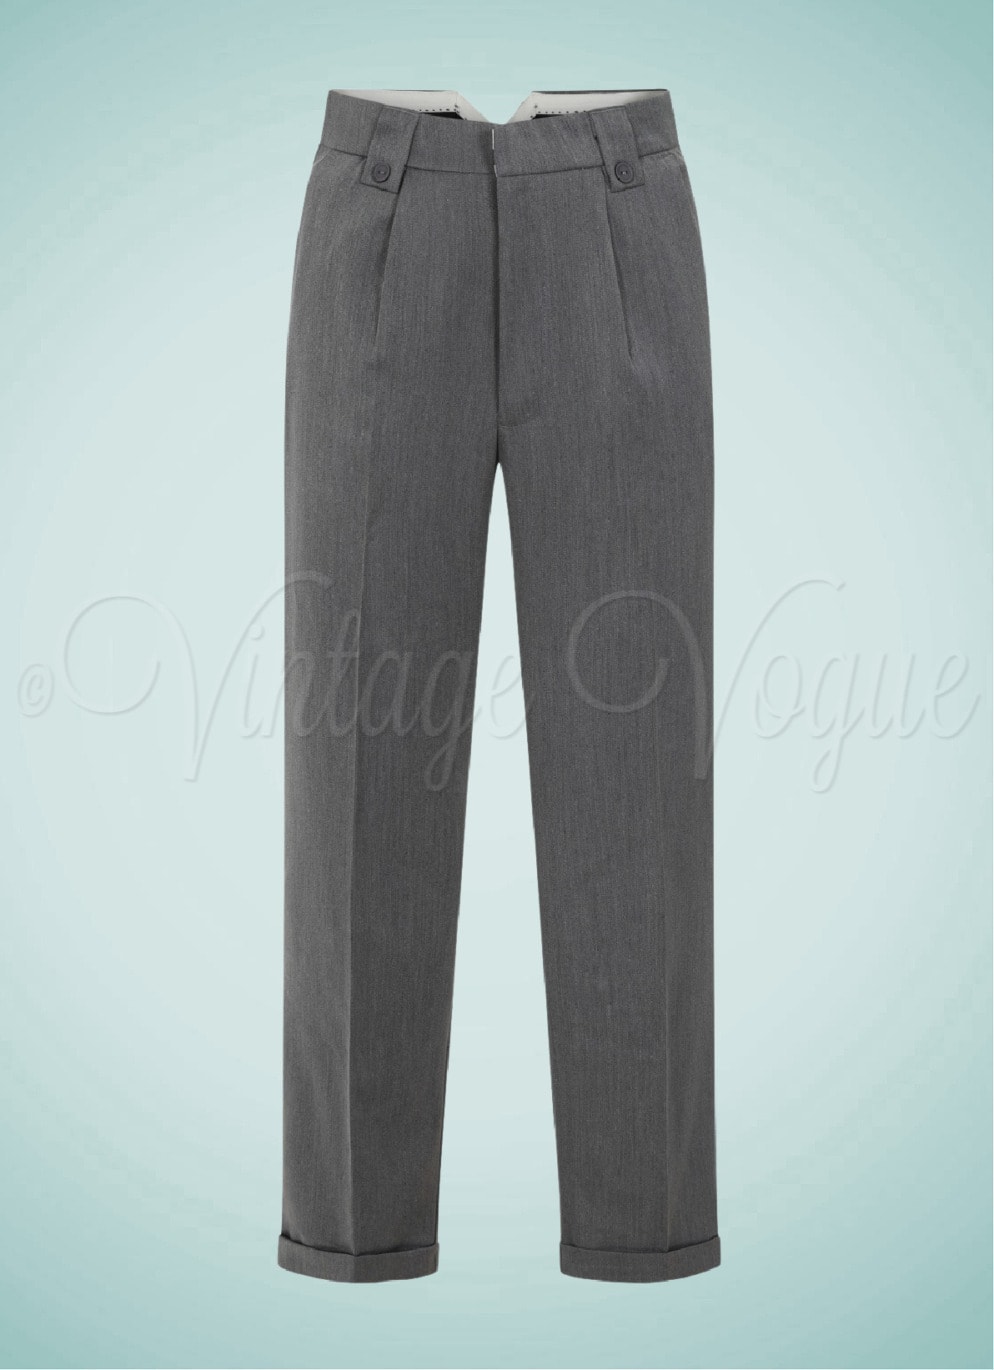 Banned 40er Jahre Vintage Herren Bundfalten Hose Get in Line Trousers in Grau